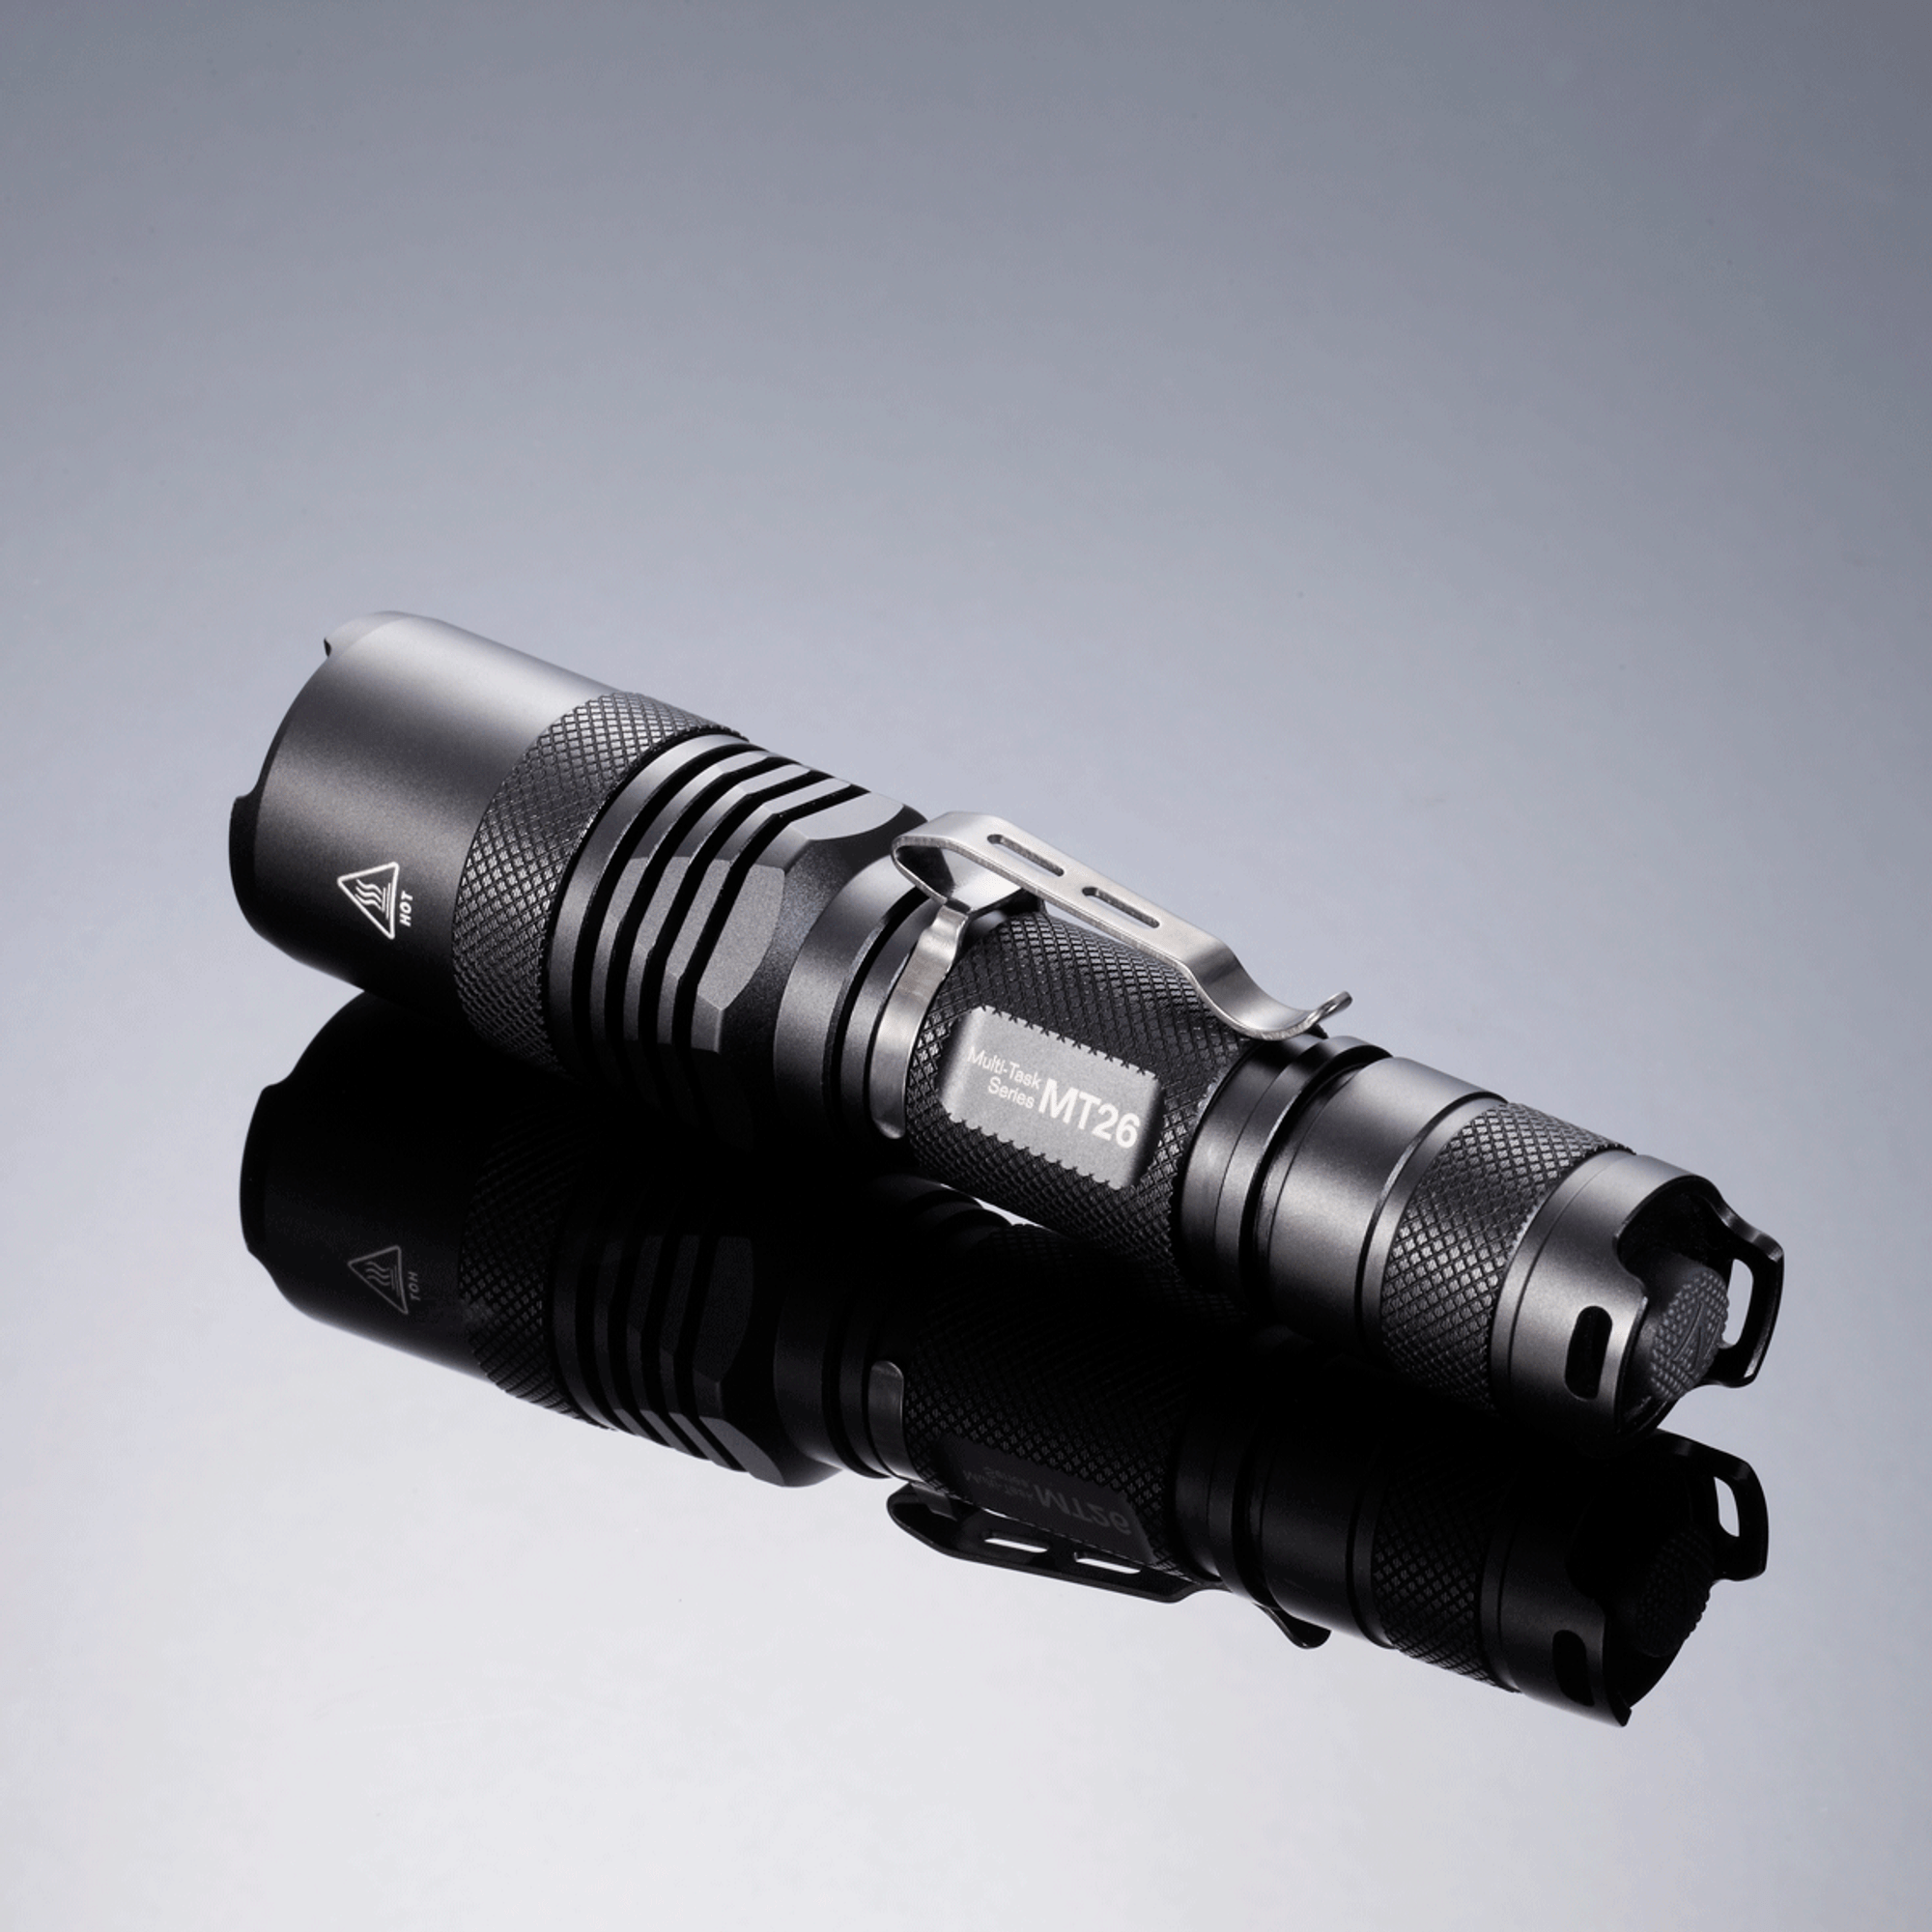 Nitecore MT26 XM-L2 U2 LED Flashlight - 960 Lumens